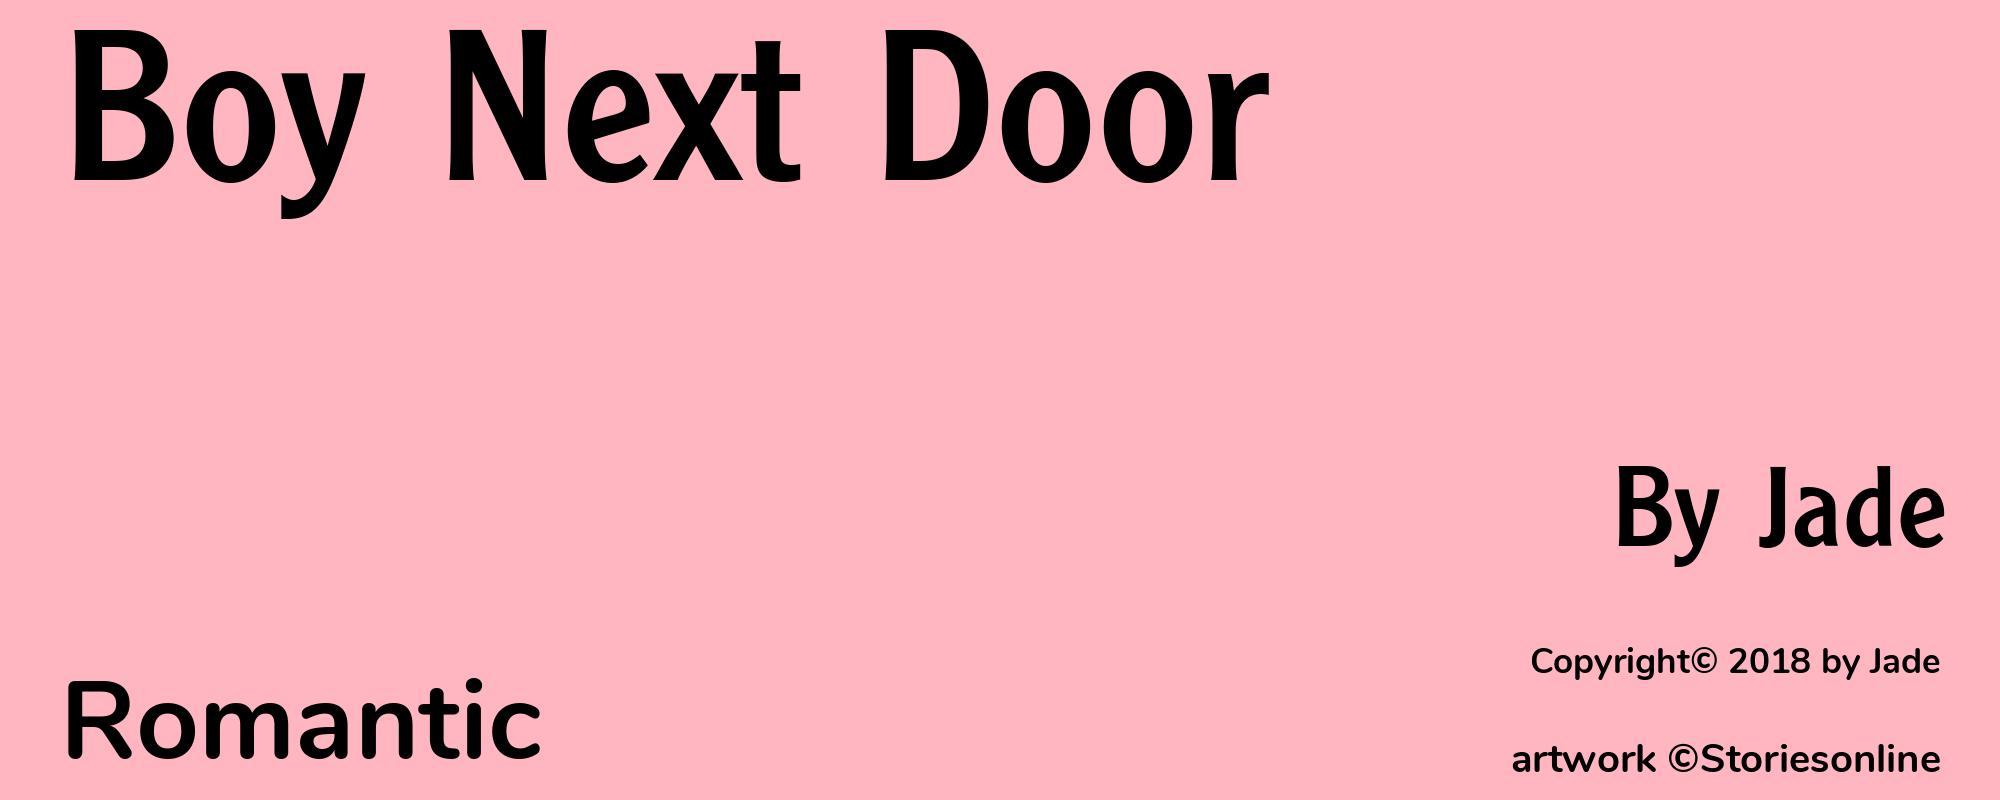 Boy Next Door - Cover